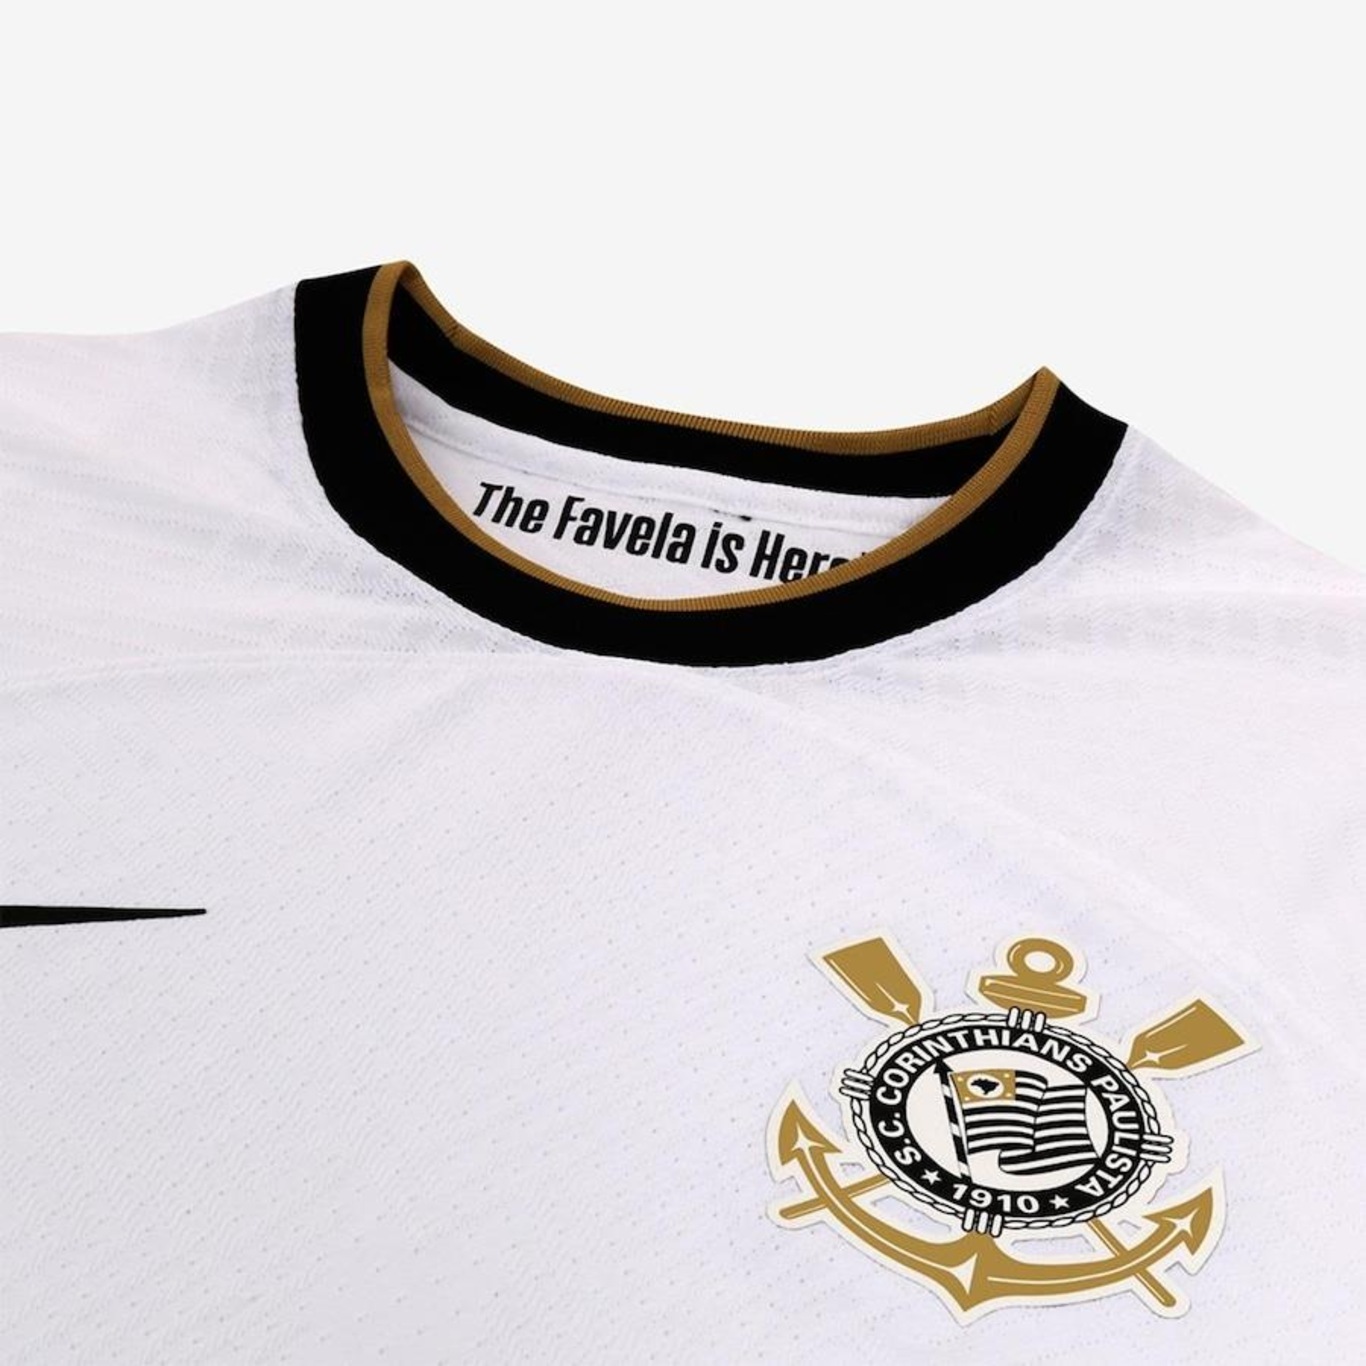 Camisa do Corinthians I 22 Jogador Nike - Masculina